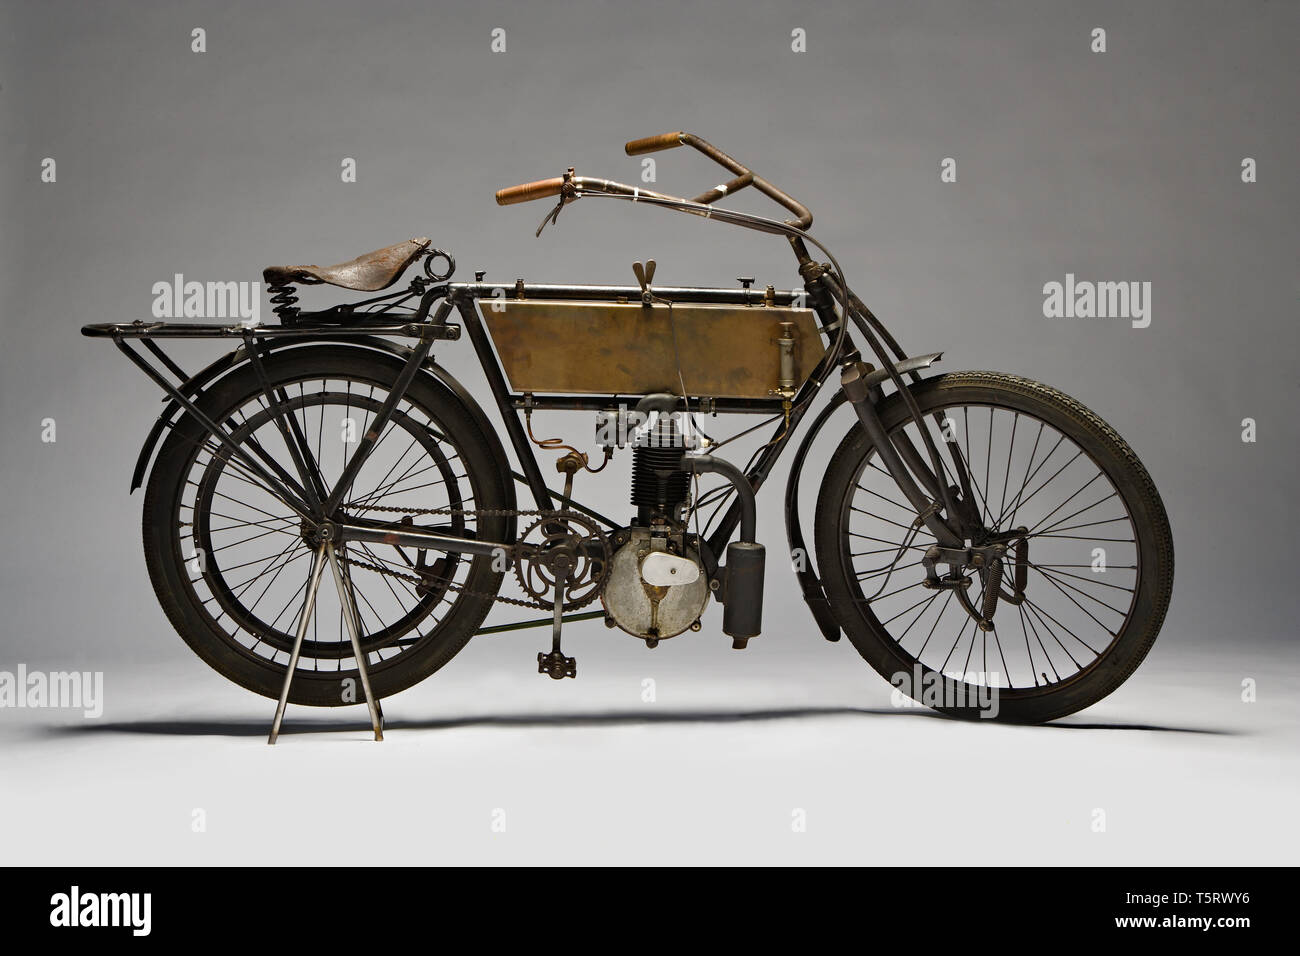 Moto d'epoca Zedel - Frera Hp 3 Marca : Zedel - Frera modello : 3 Hp nazione : Svizzera - Saint Aubin : anno 1903 conditions : restaurata cili Banque D'Images